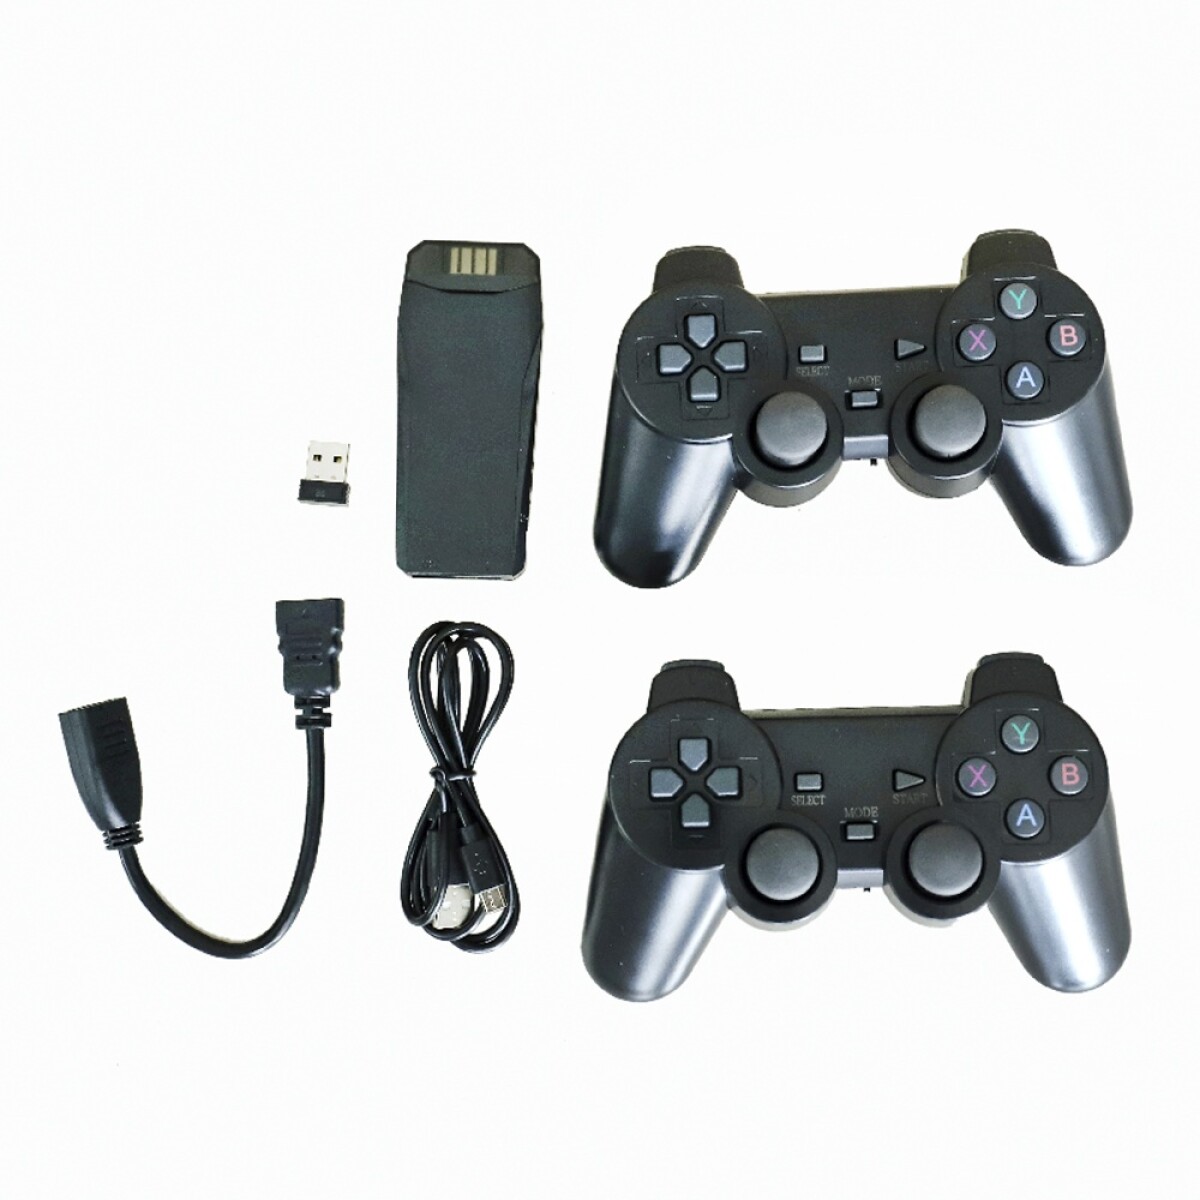 Juegos en Consola Portátil Inalámbrica HDMI 64G c/2 Joystick - Negro 